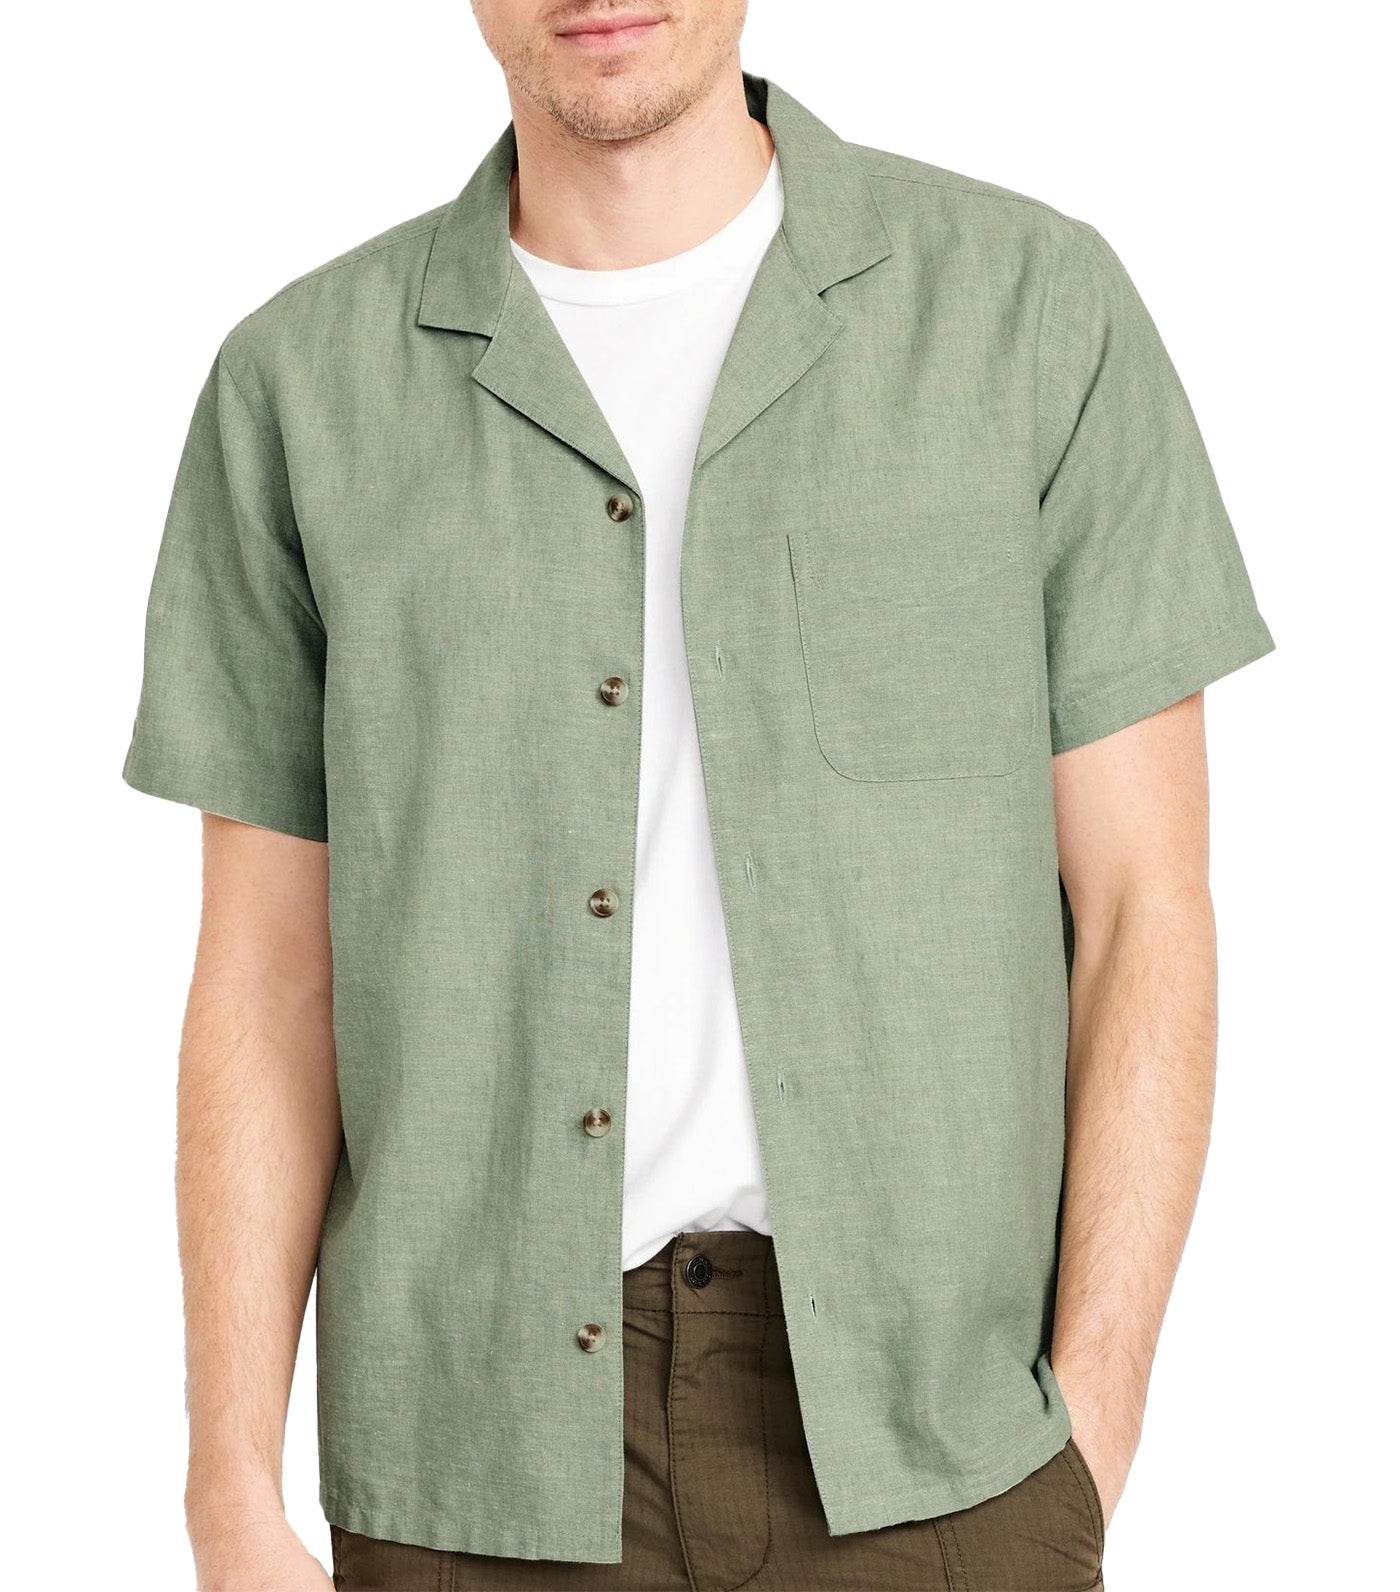 Short-Sleeve Printed Camp Shirt for Men Olive